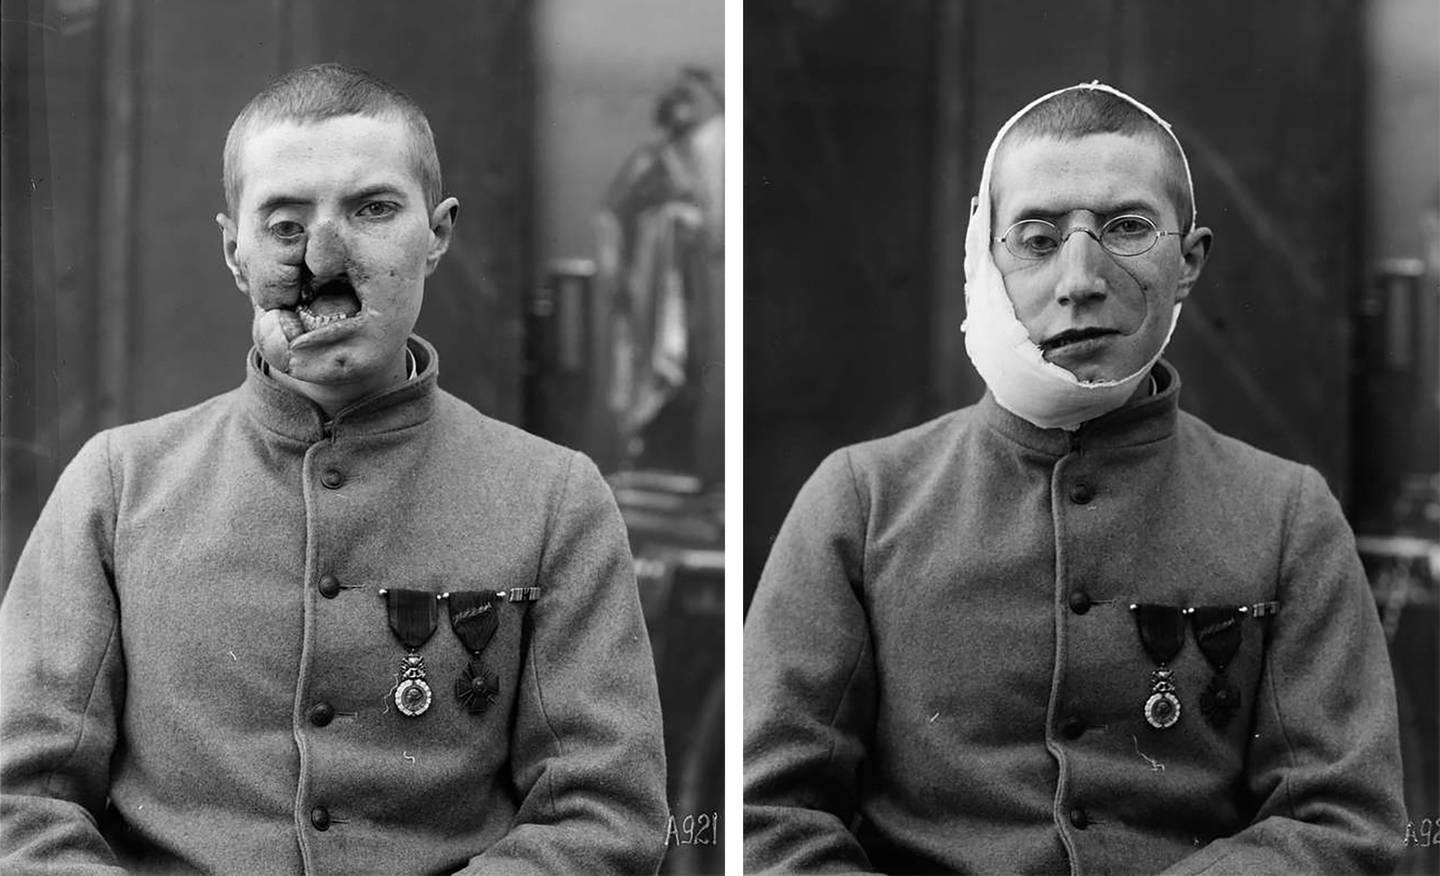 Før og etter-bilde av en av soldatene som fikk ansiktsmaske. Foto: Library of Congress.